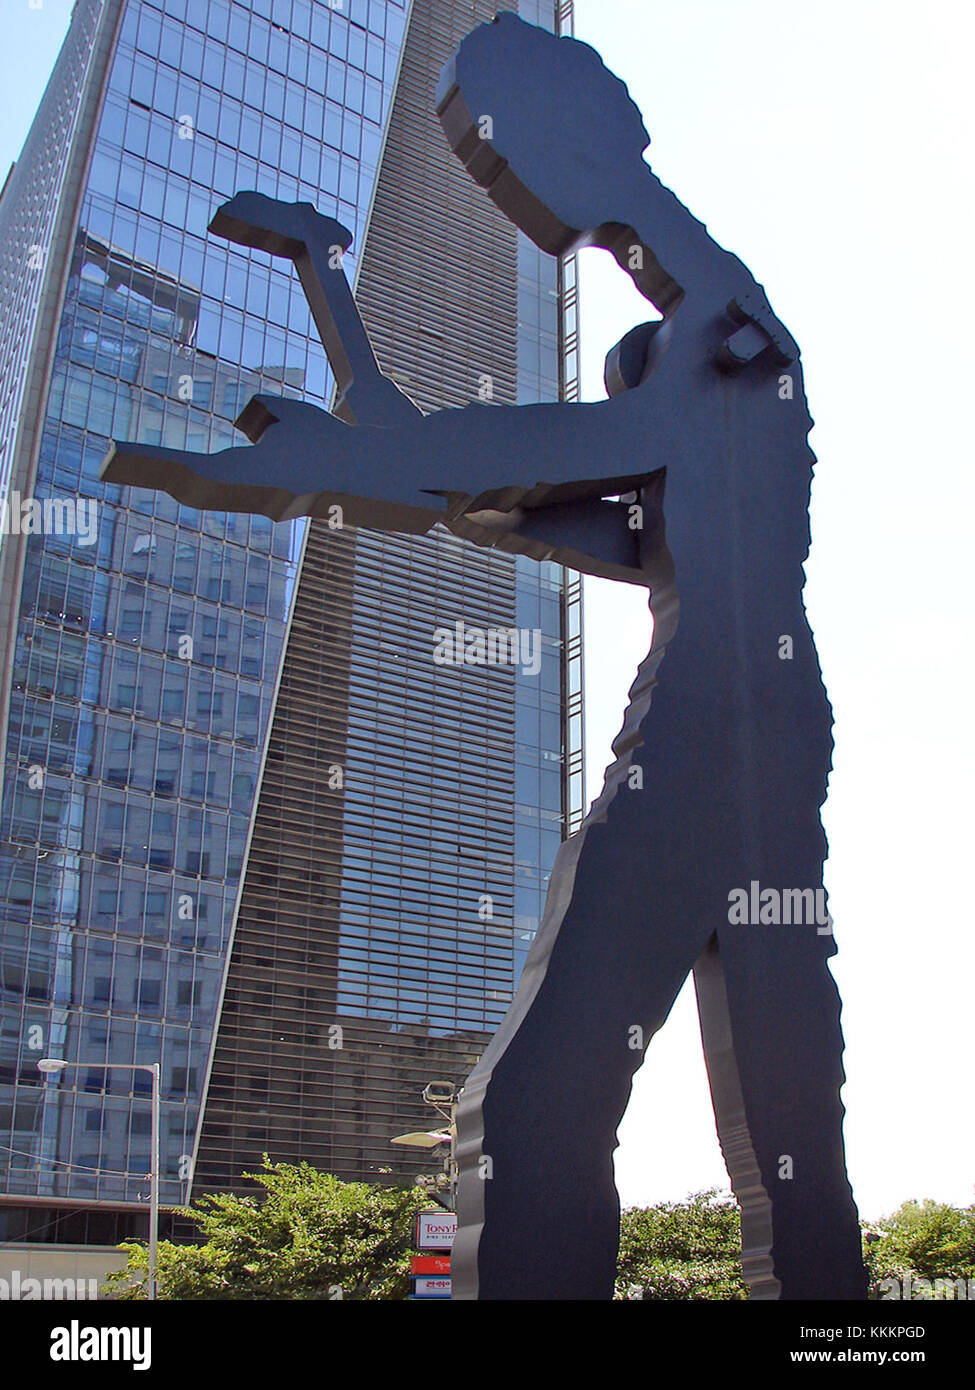 Seoul Hämmering man - der größte der Hämmering man steht 72 Meter hoch und wiegt 50 Tonnen. Der Arm des Hämmers 'hämmert' leise und sanft einmal in einer Minute alle sieben Sekunden. Korea-Seoul Hammering Man 11-00291 Stockfoto